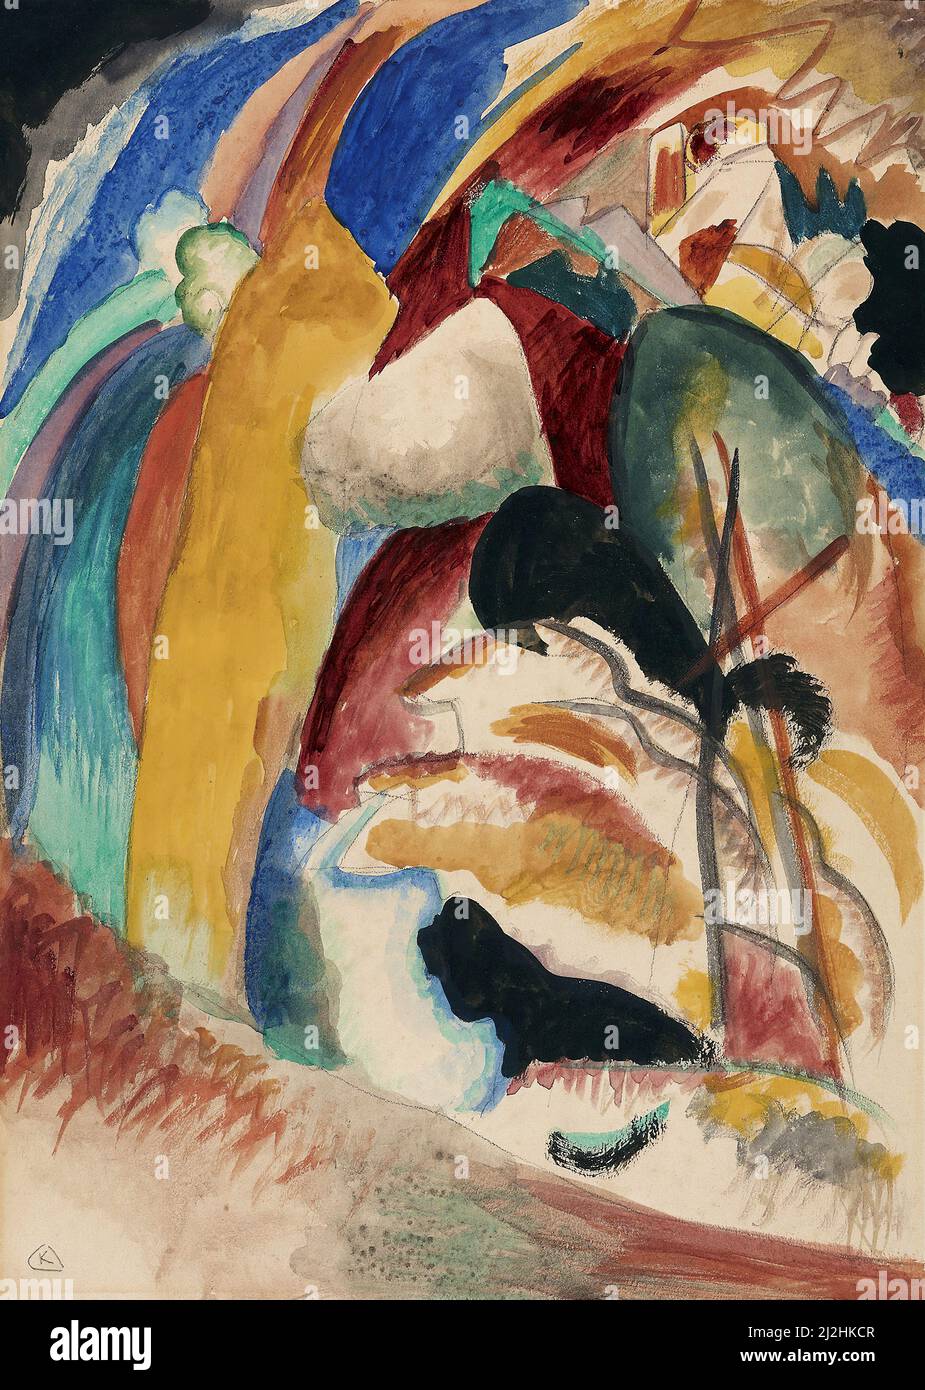 Gemälde von Wassily Kandinsky, 1910s. Entwurf für Bild mit weißer Form (1913) Öl auf Leinwand. Stockfoto